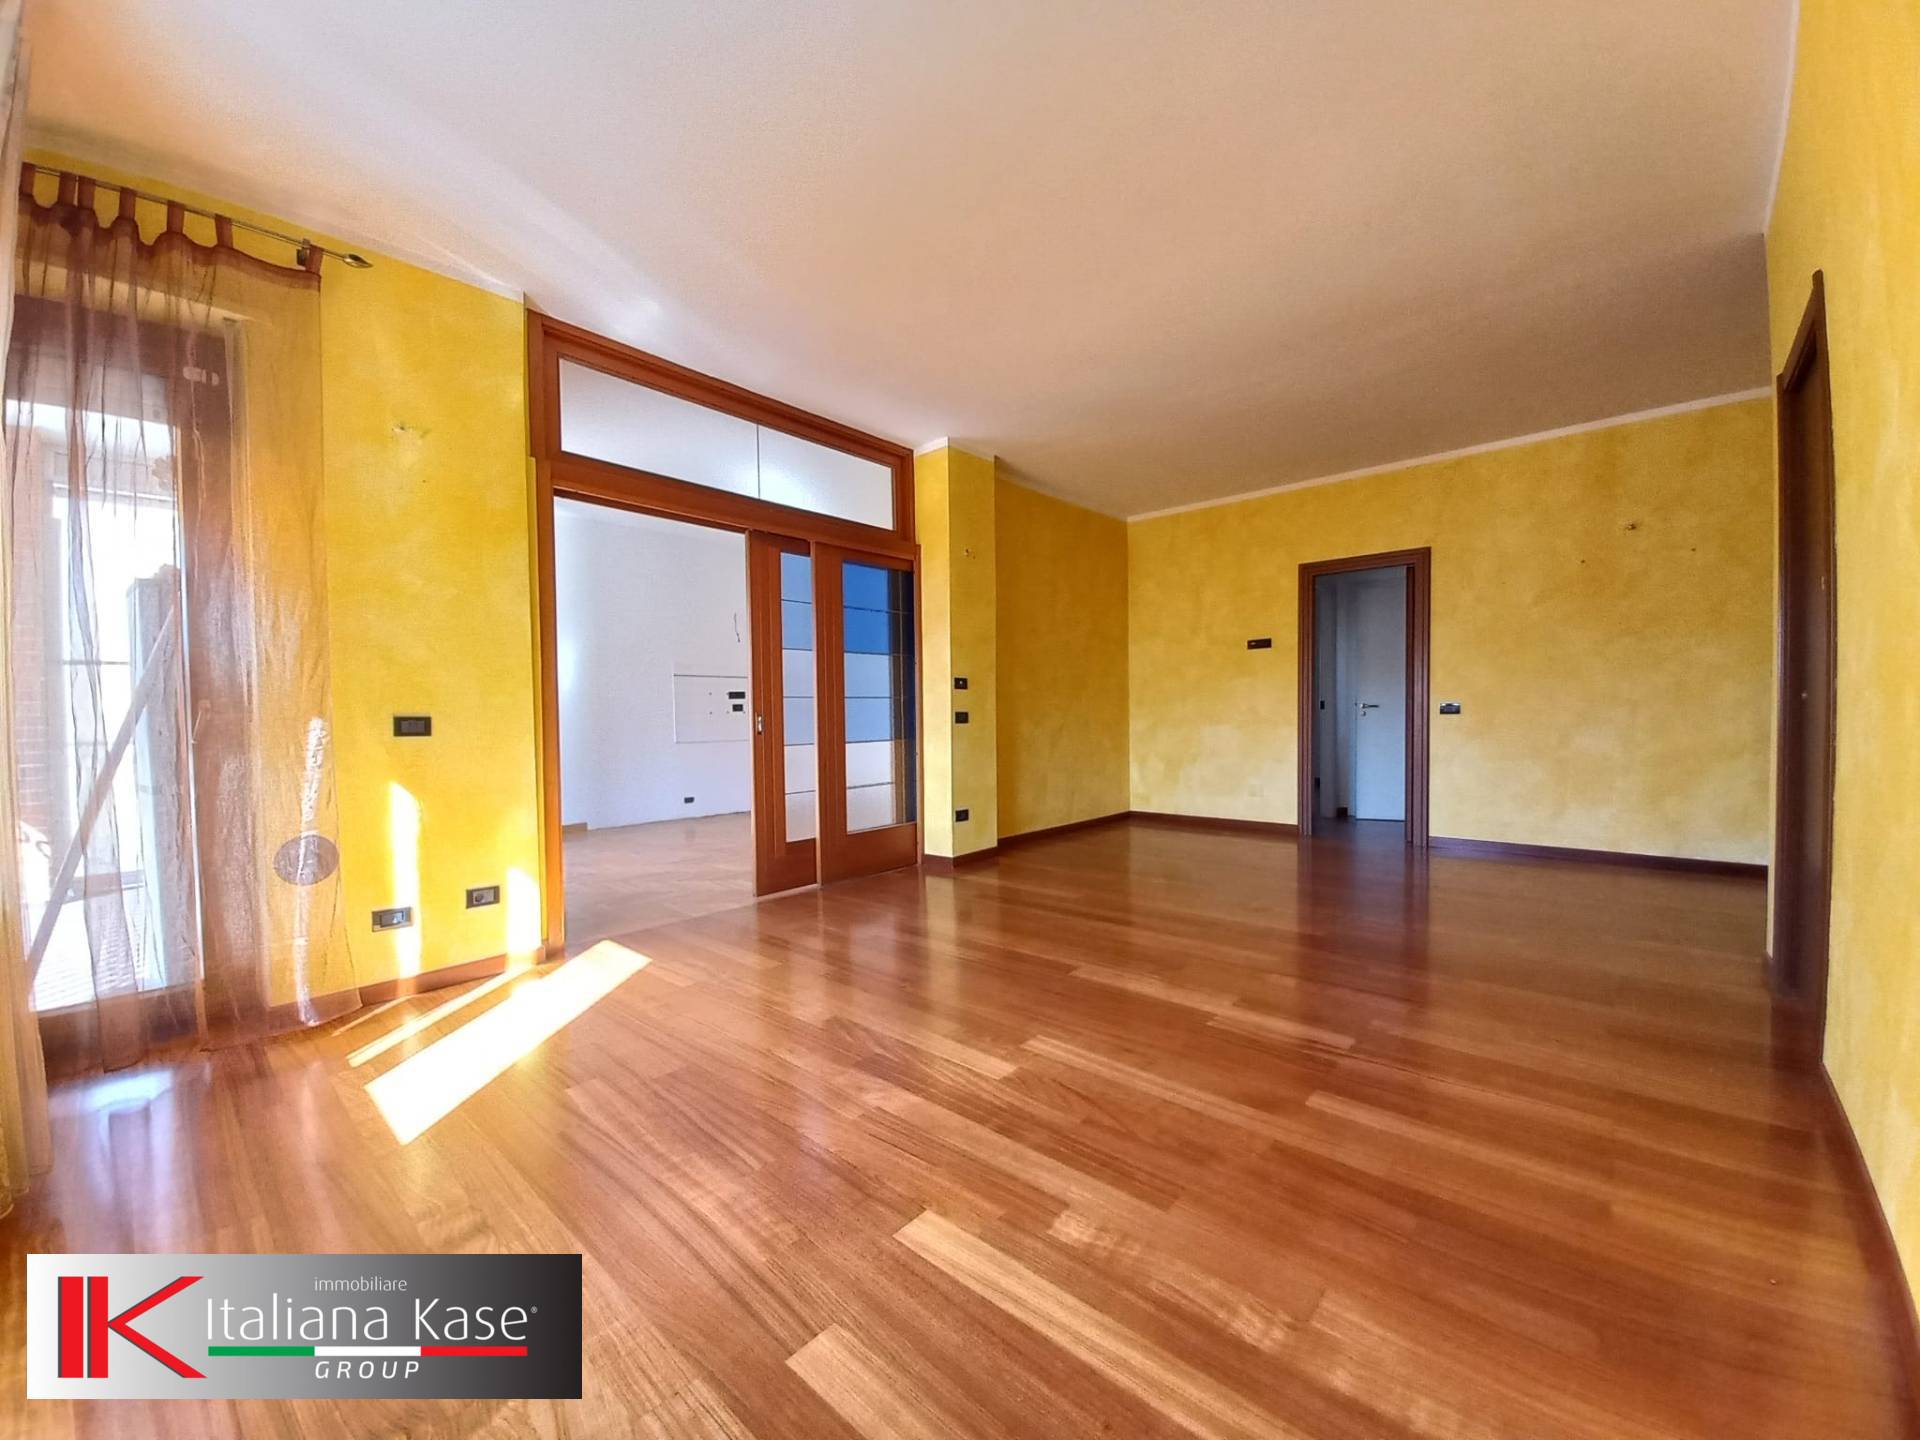 Appartamento in vendita a Caluso, 4 locali, zona Località: Caluso, prezzo € 127.000 | PortaleAgenzieImmobiliari.it